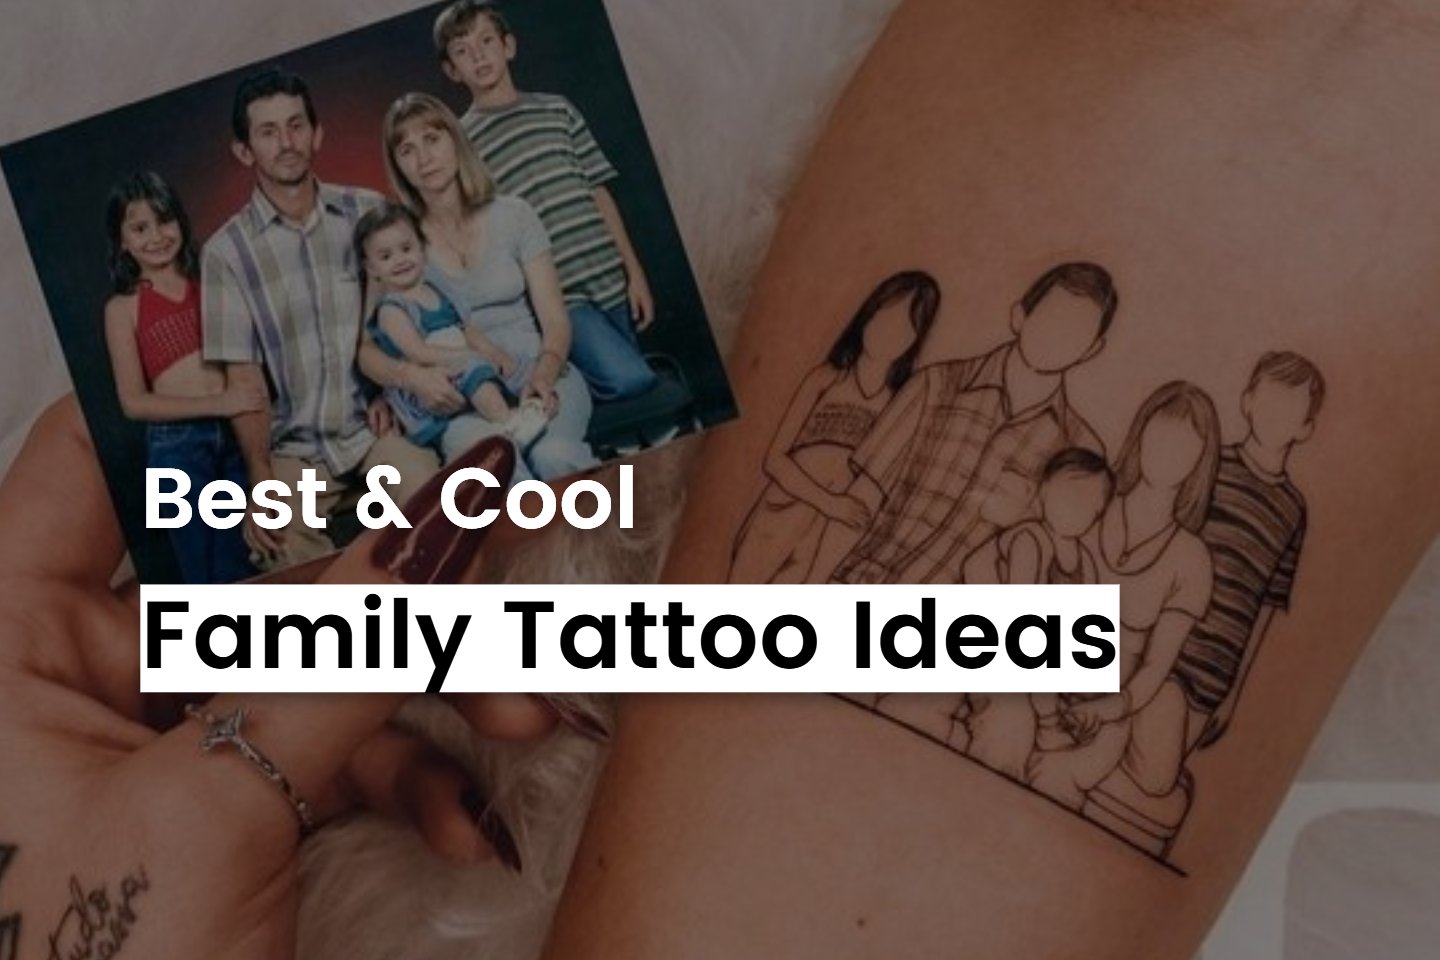 Body tattoos - Best Tattoo Ideas Gallery